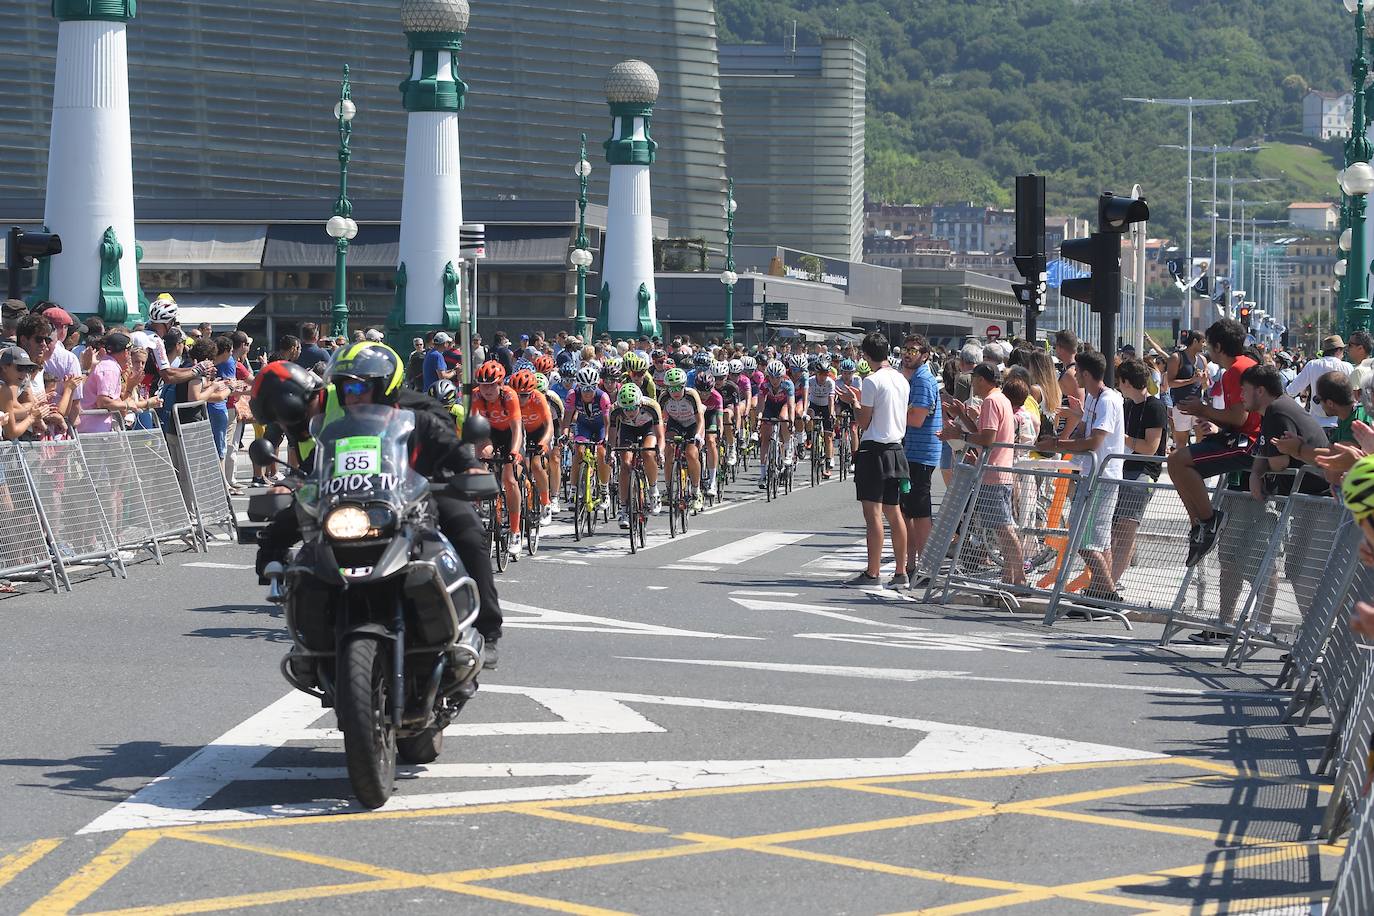 Emoción por todo lo alto en la disputa de la primera edición femenina de la Clásica de San Sebastián, con mucho público animando a las corredoras por todo el recorrido